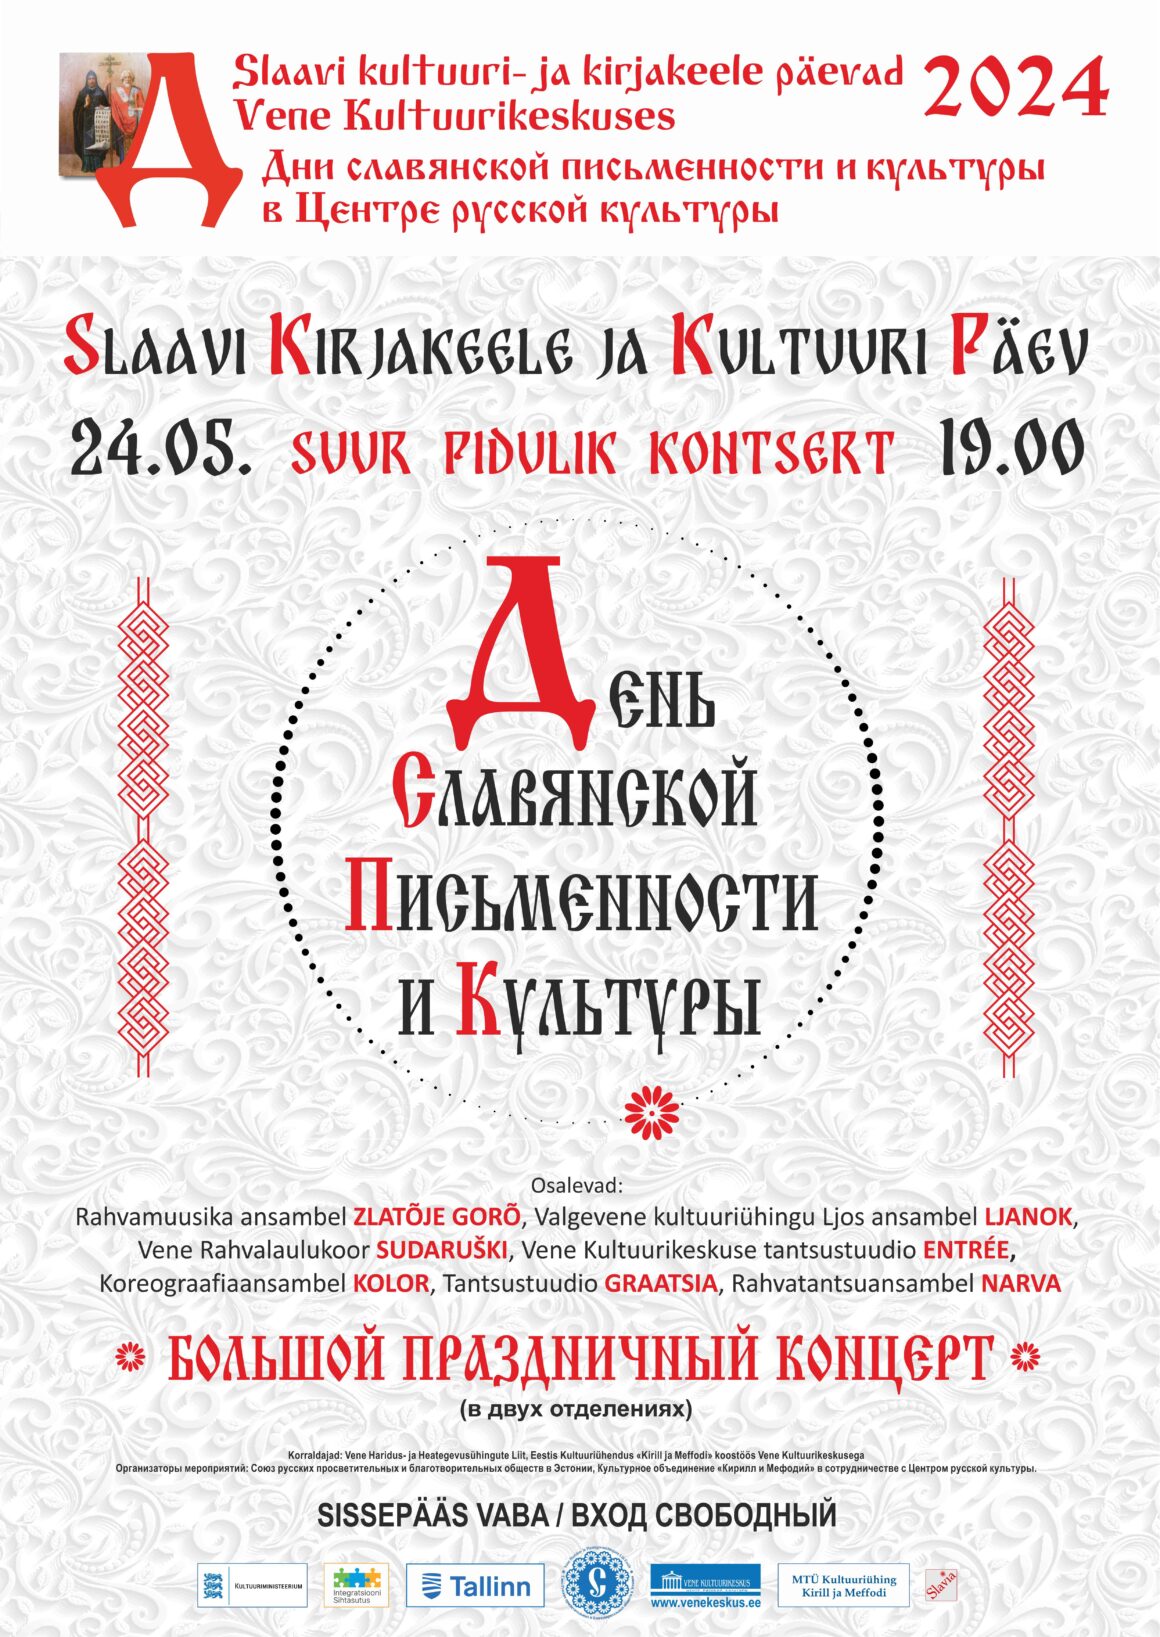 24.05.24 – Slaavi kirjakeele ja kultuuri päevad 2024: suur pidulik kontsert «Slaavi kirjakeele ja kultuuri päev»